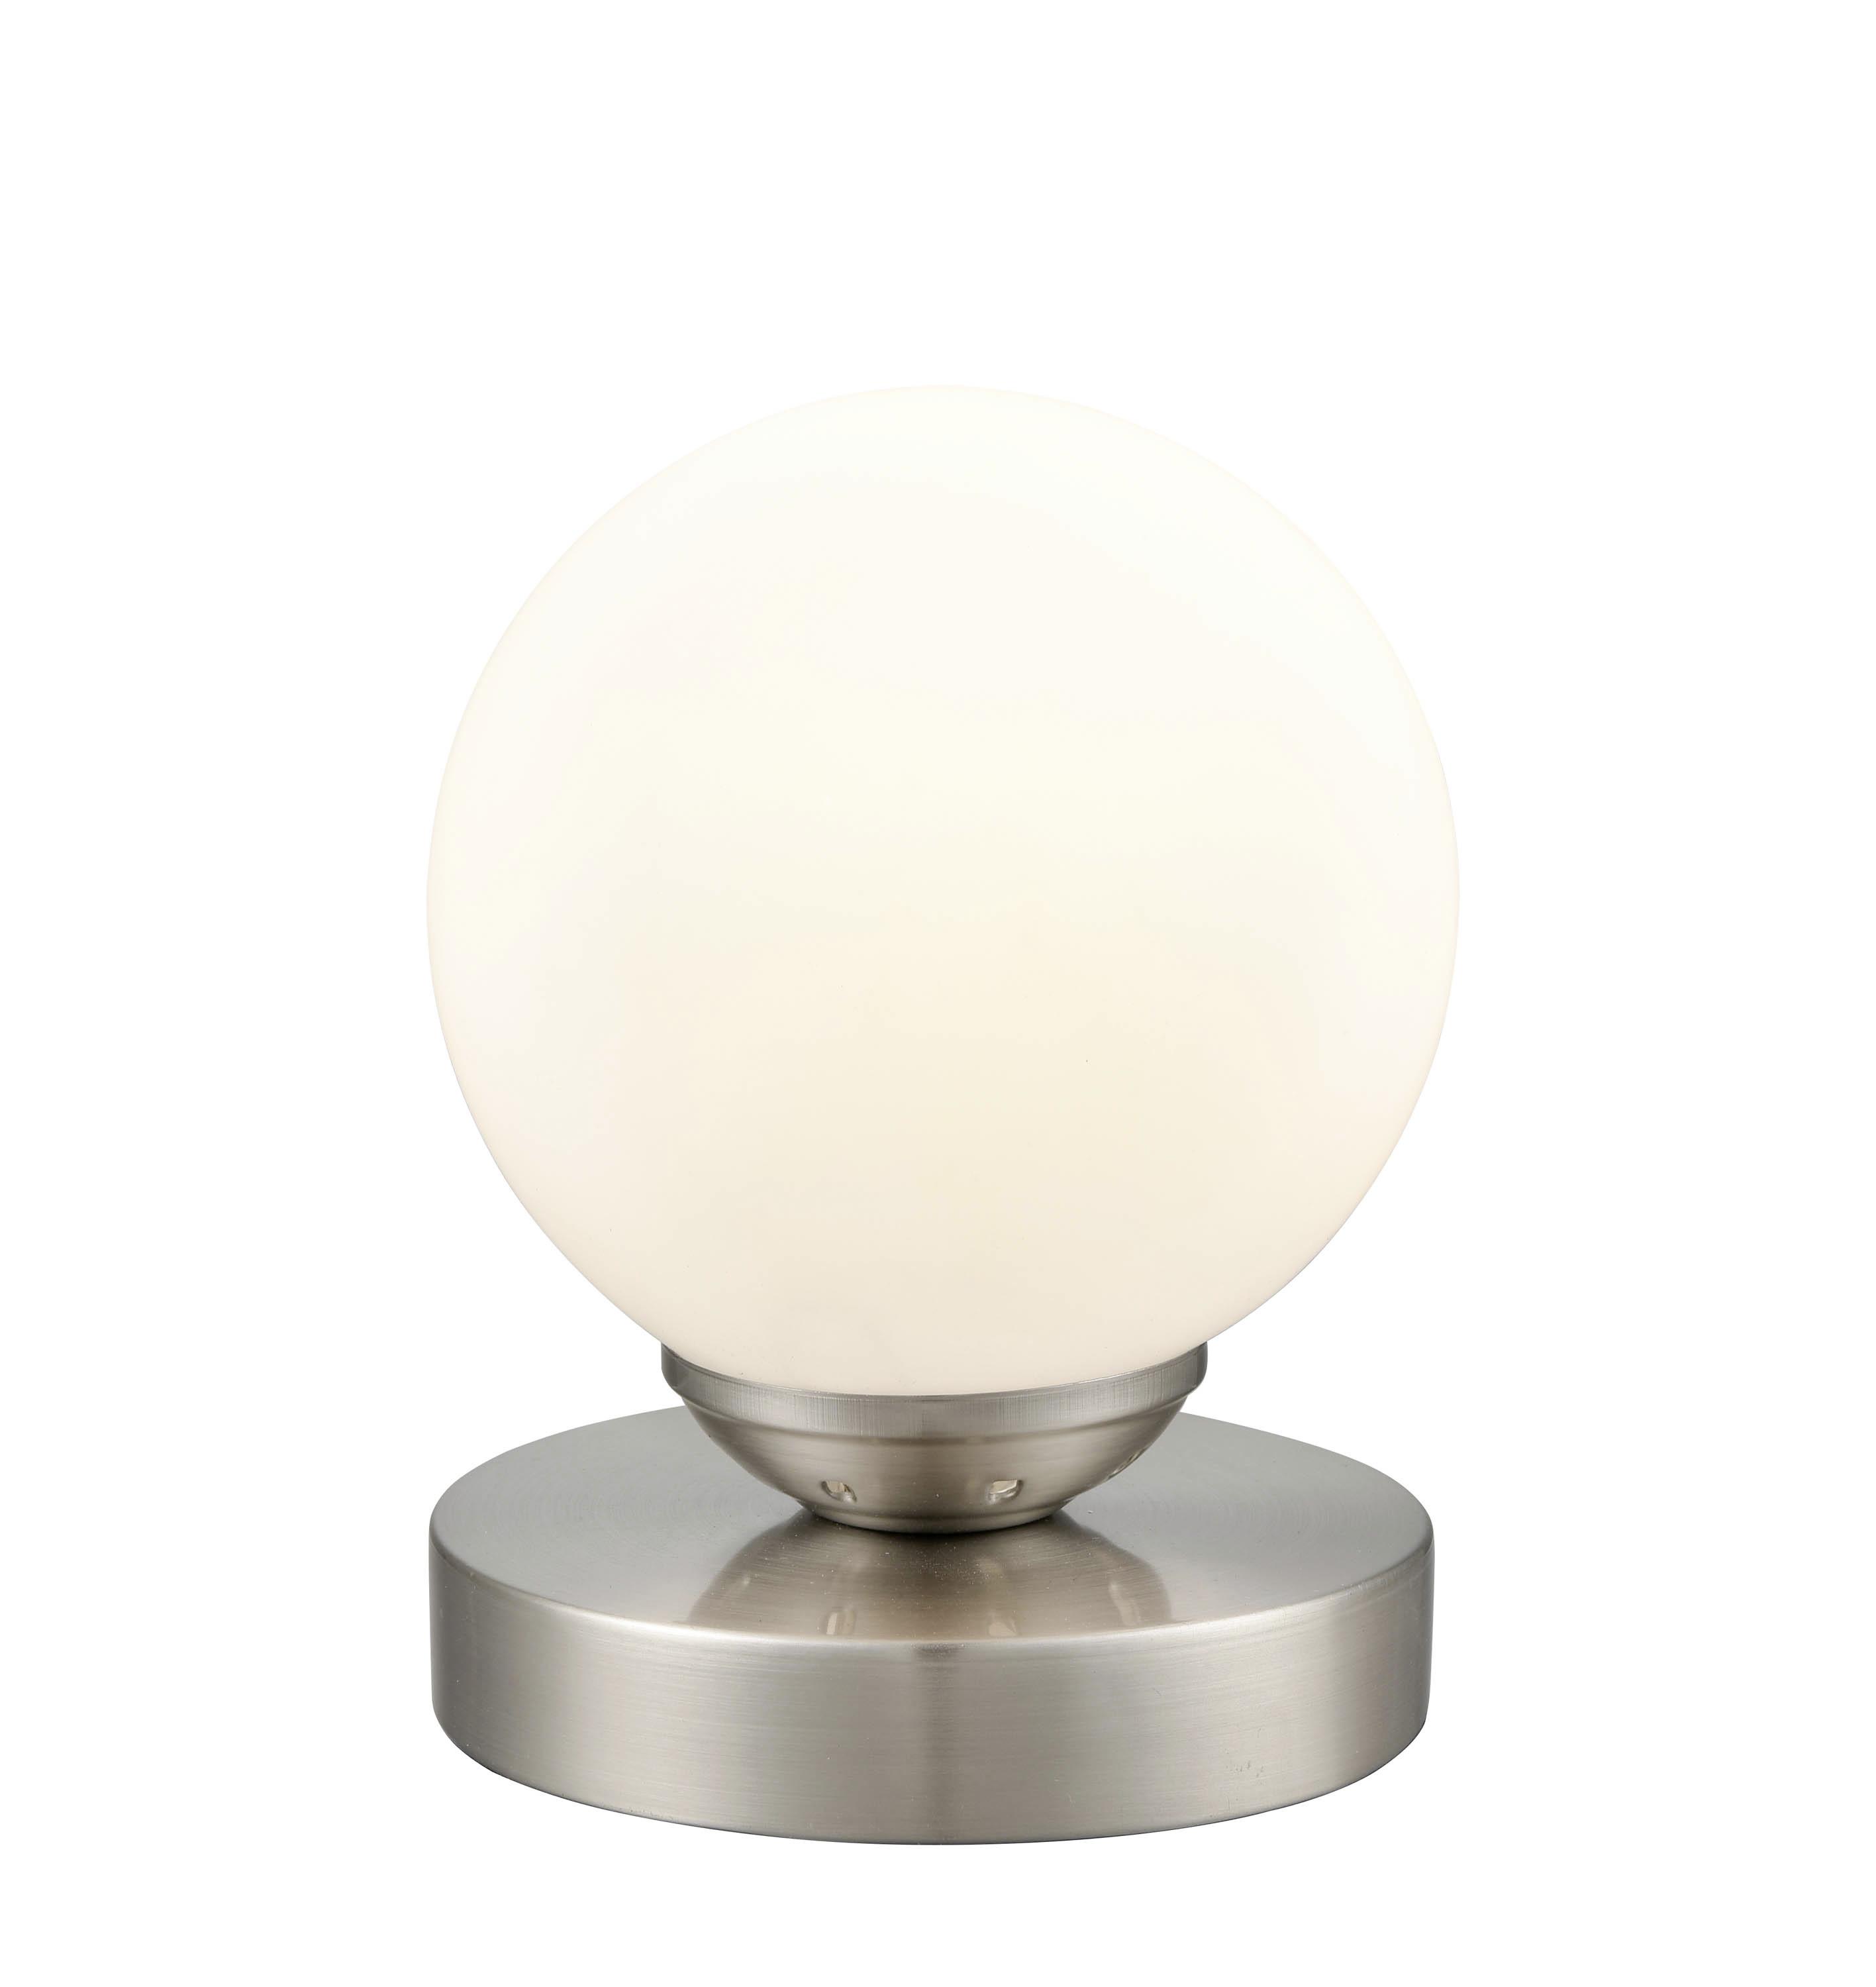 Tischlampe Ines Nickelfarben mit Milchglaskugel - Weiß/Nickelfarben, ROMANTIK / LANDHAUS, Glas/Metall (12/15cm) - James Wood